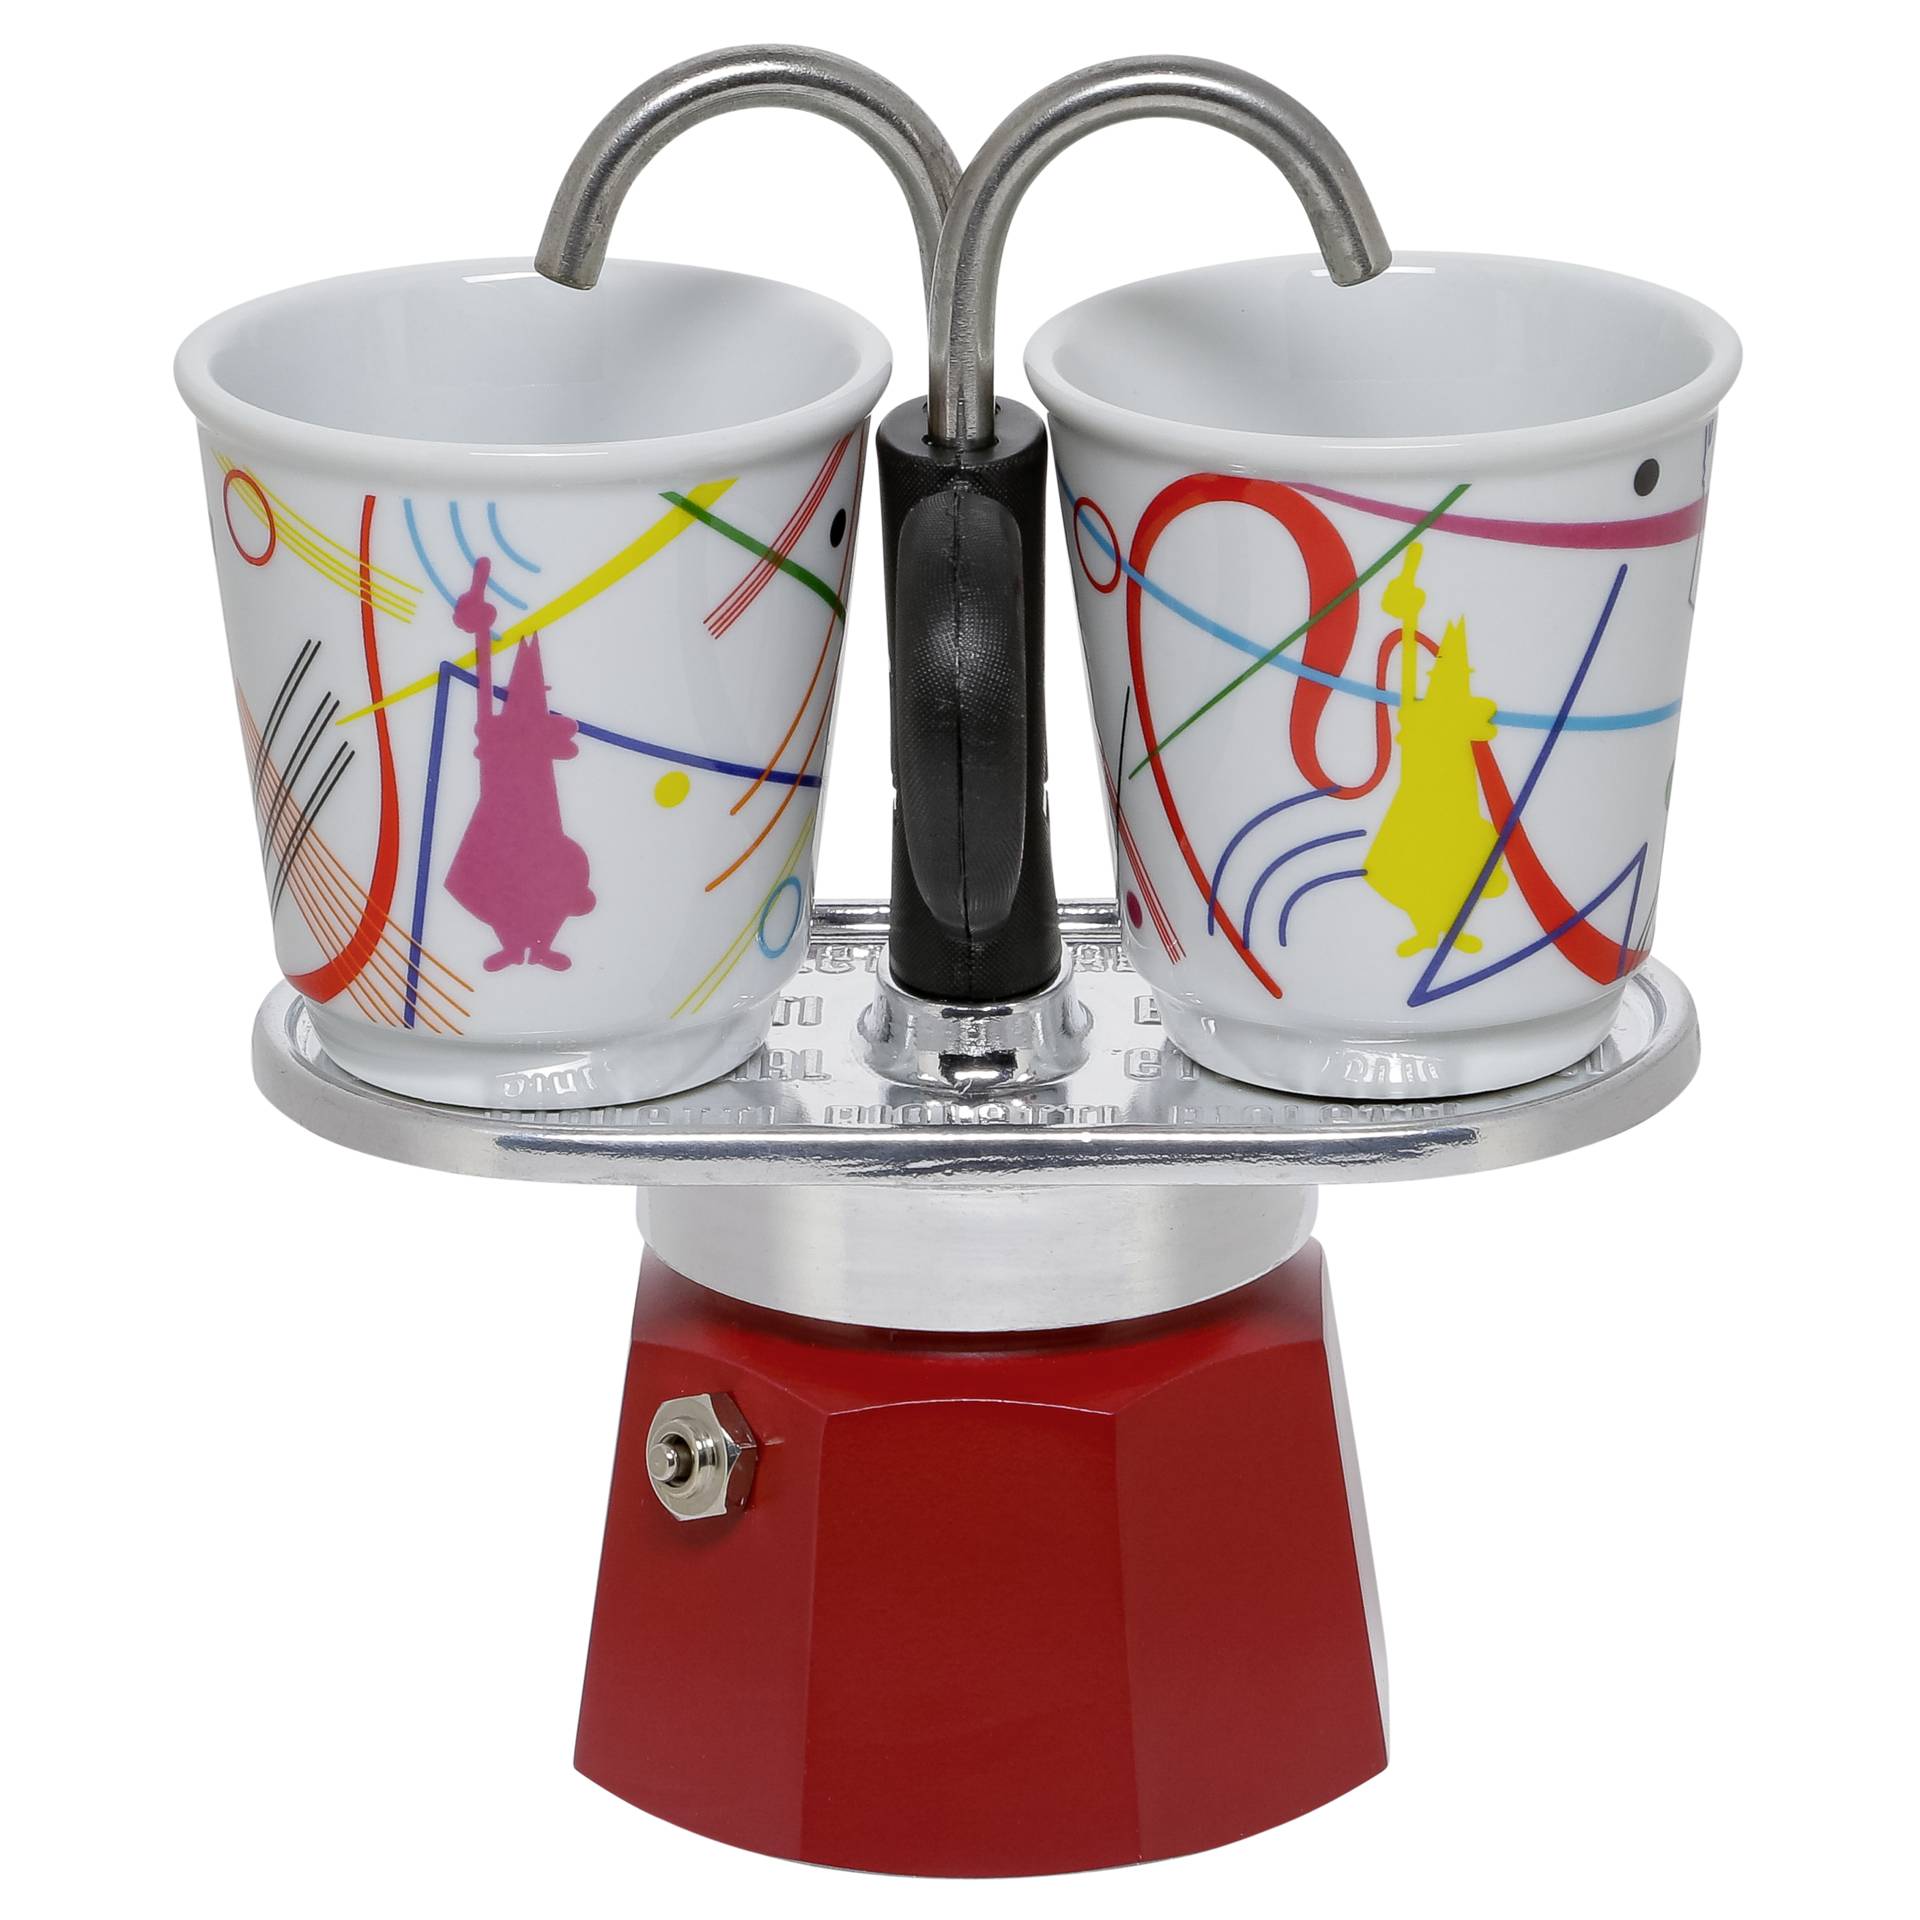 Bialetti Kandinsky Express Mini Coffee Maker Set +2 Cups